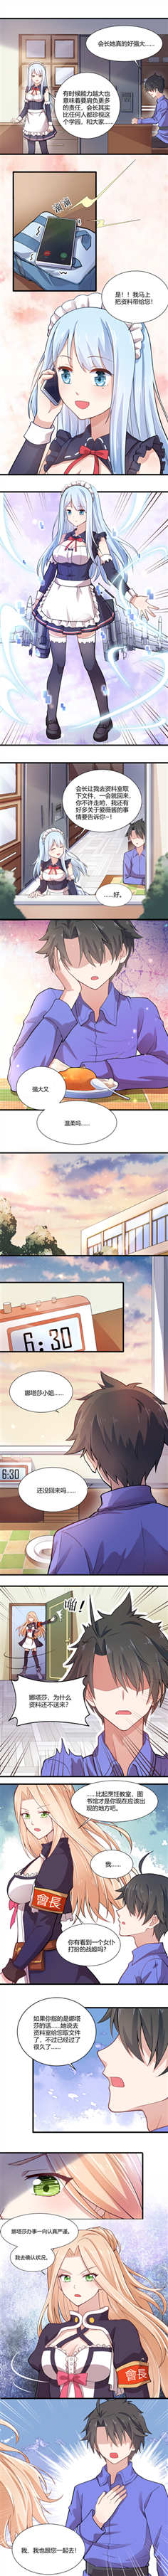 8月1日正式首发《飞行少女学园》漫画曝光